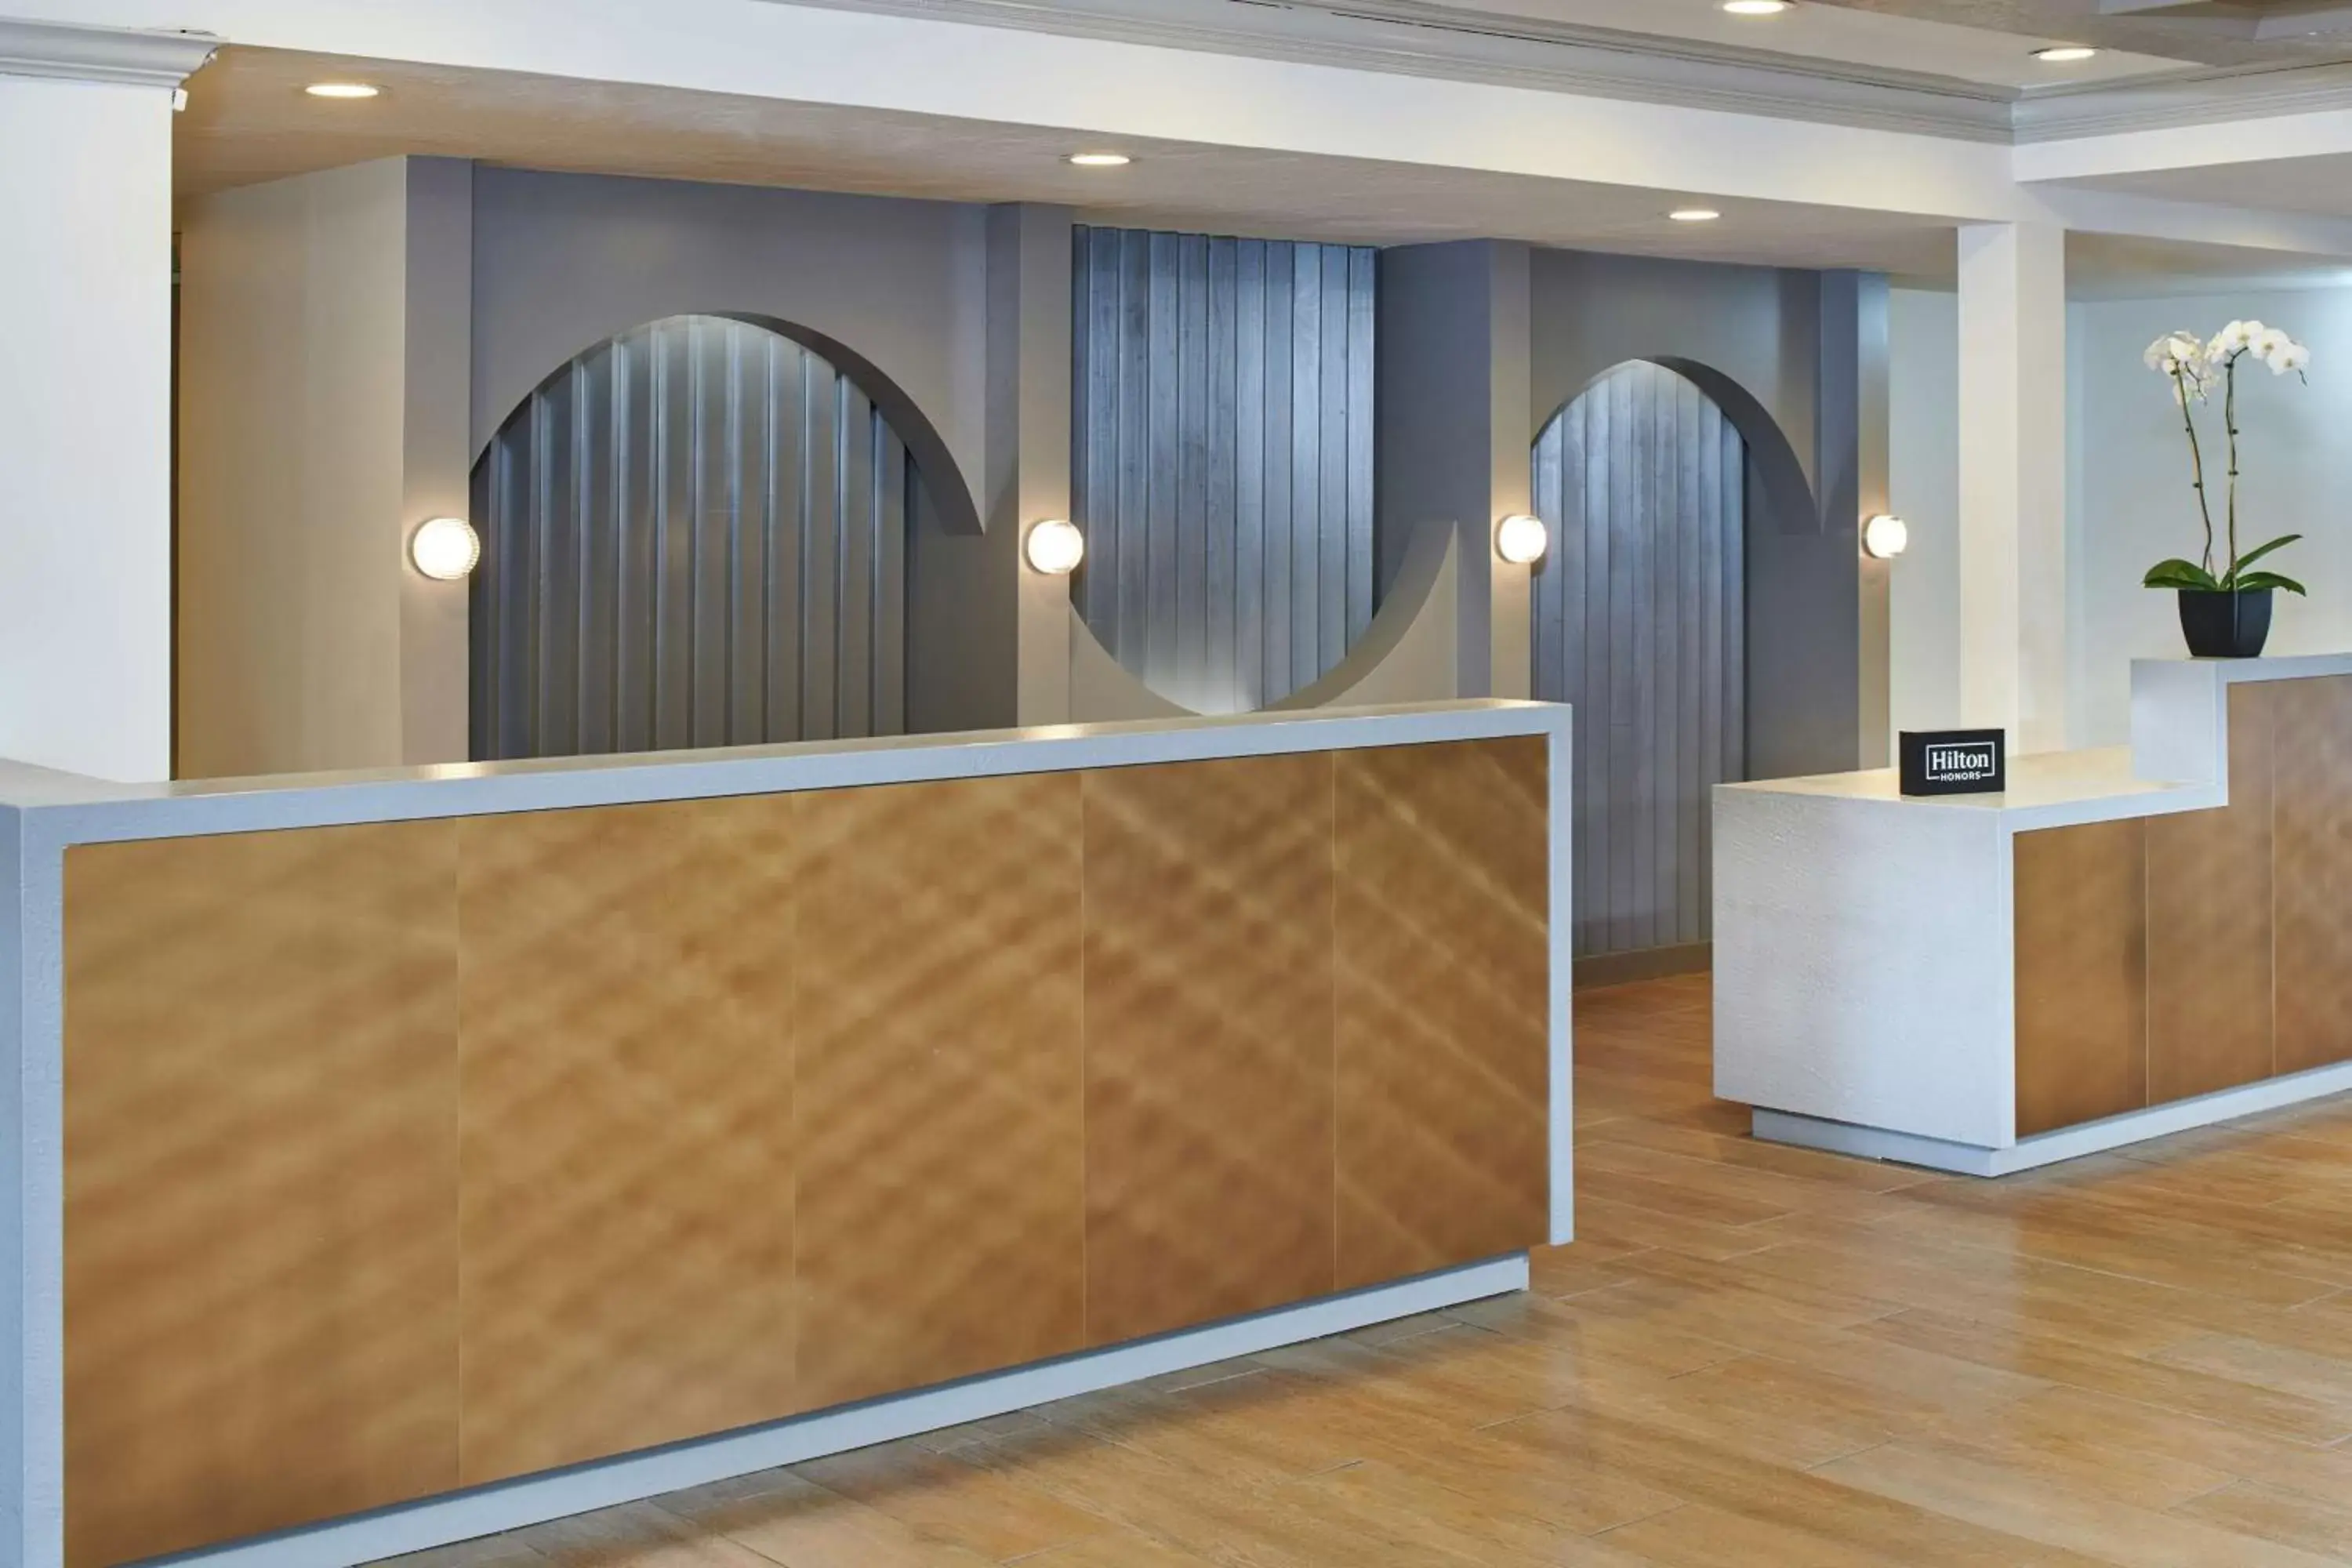 Lobby or reception, Lobby/Reception in DoubleTree by Hilton Hotel Berkeley Marina